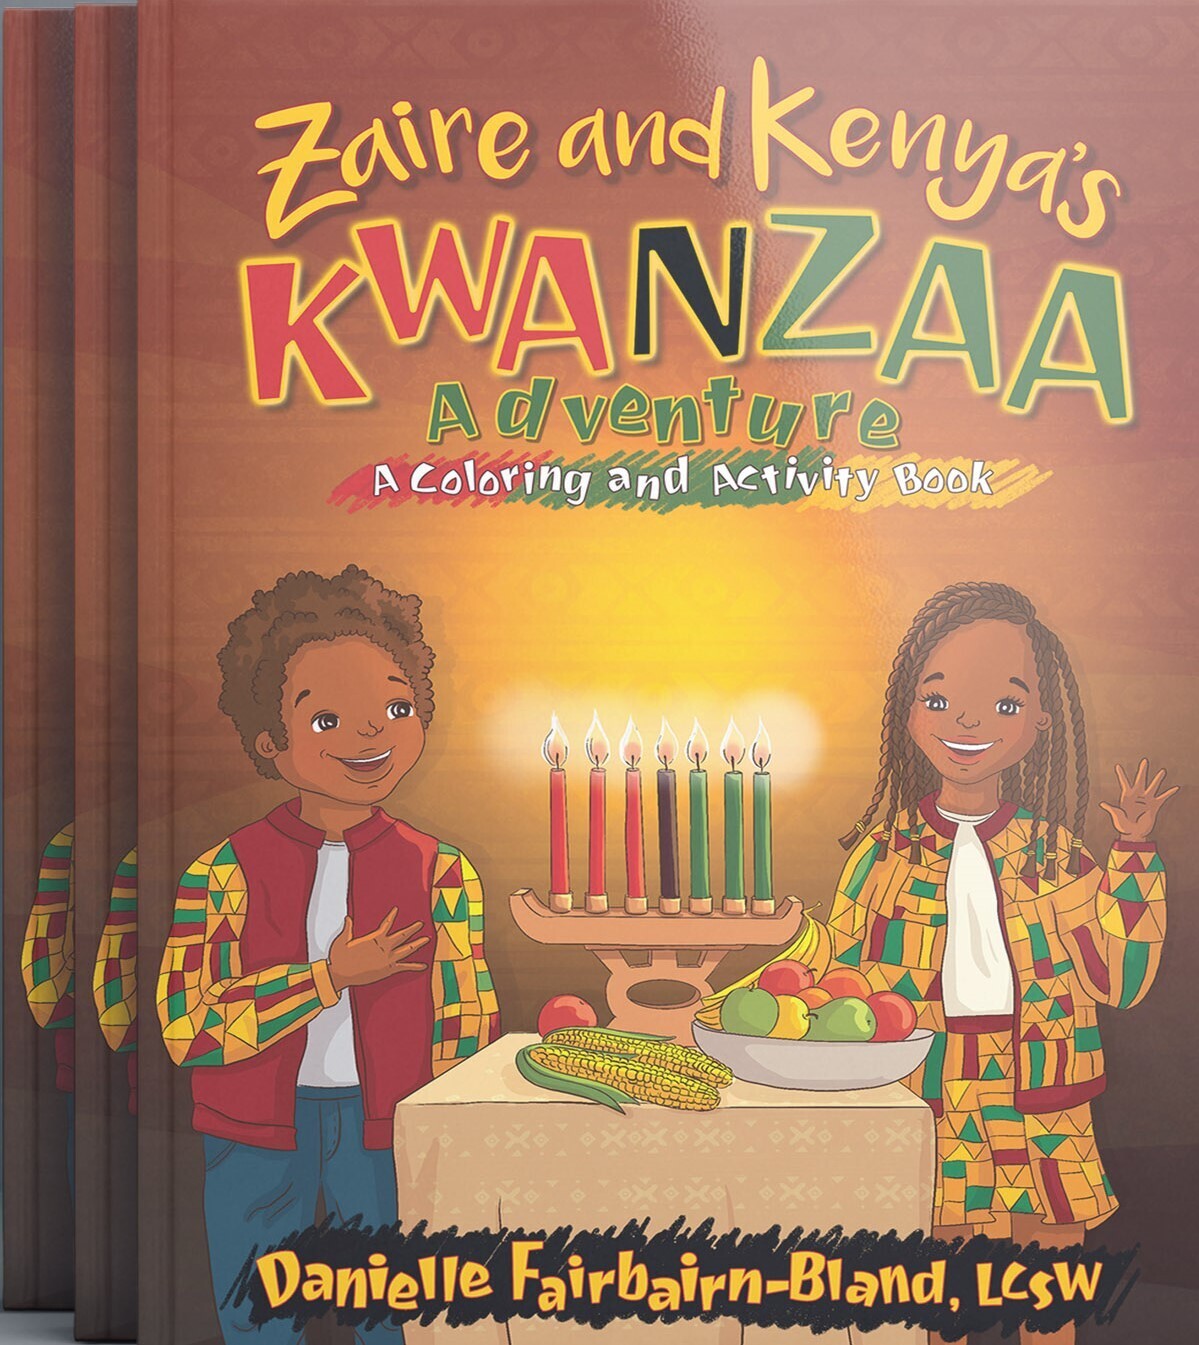 Zaire and Kenya's Kwanzaa